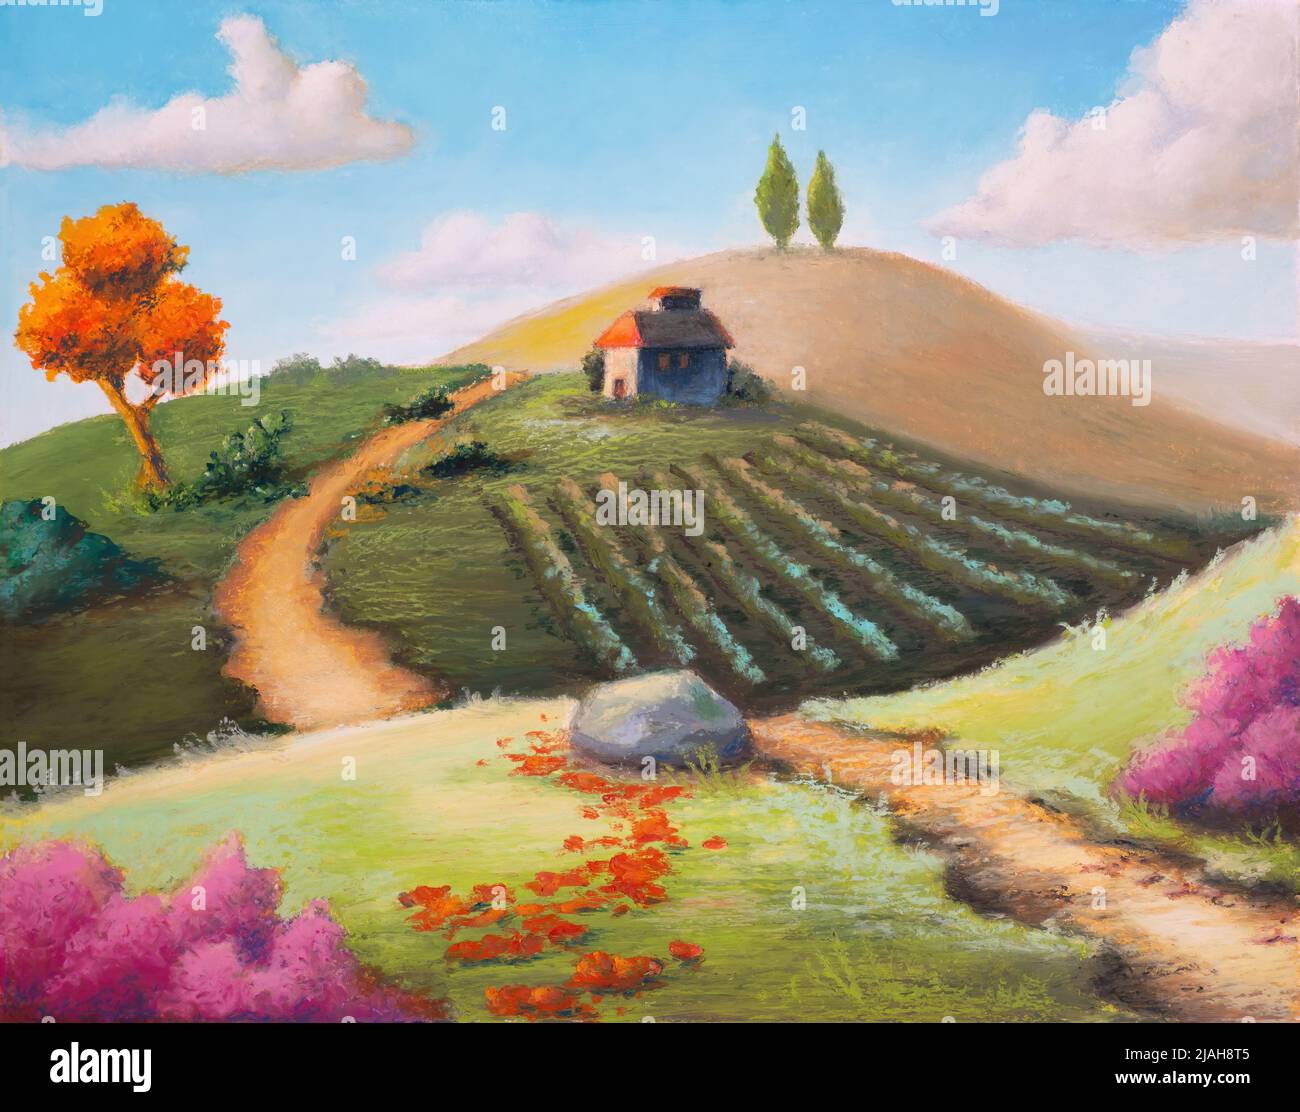 Paysage rural imaginaire avec une végétation colorée. Illustration pastel à l'huile d'origine. Banque D'Images